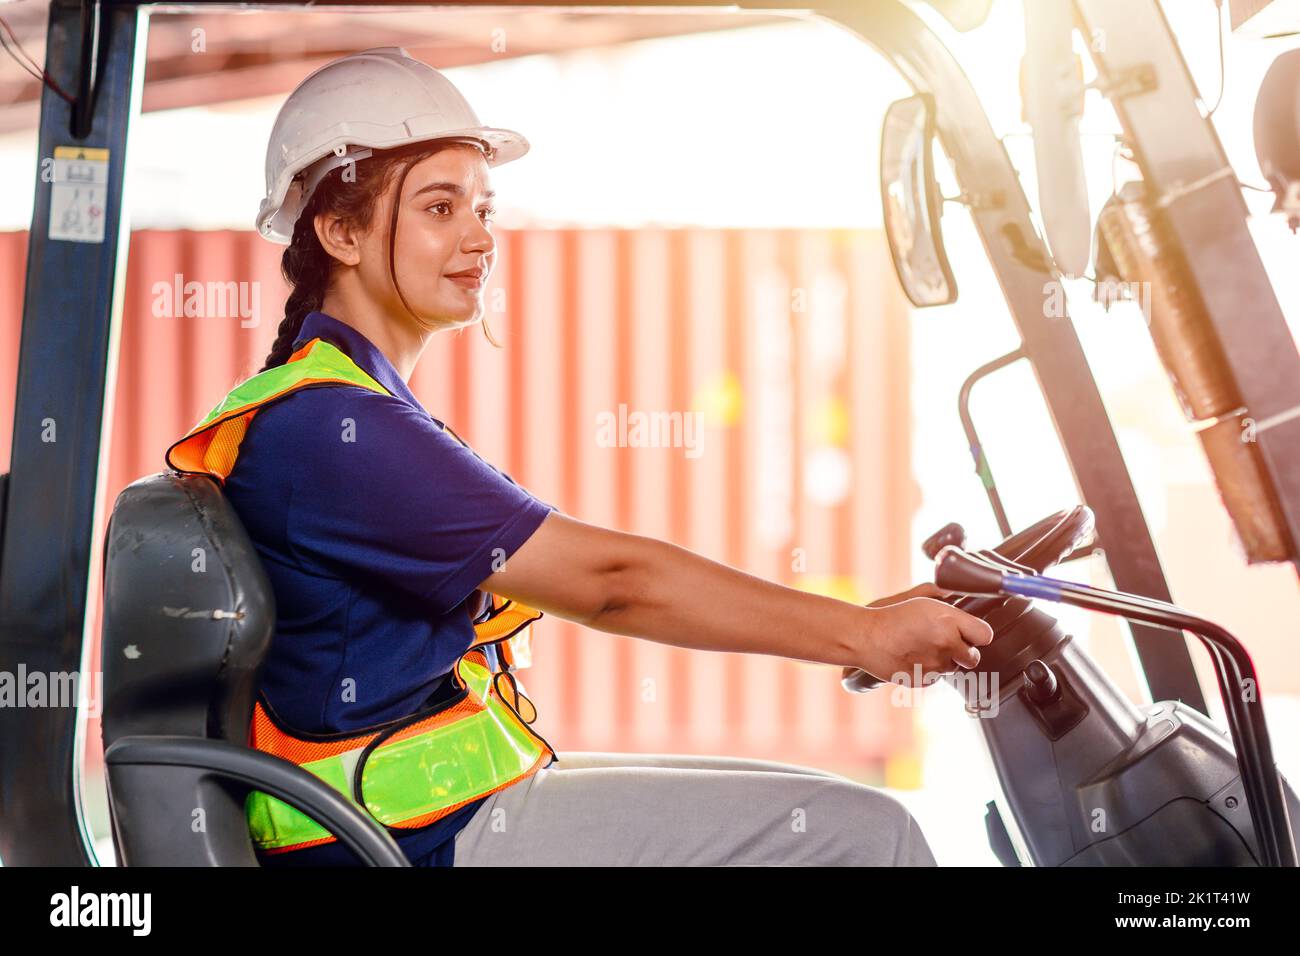 opérateur de chariot élévateur féminin travaillant dans un entrepôt. Portrait d'une jeune femme indienne chauffeur assis dans un chariot élévateur et souriant travaillant dans un grand entrepôt Banque D'Images